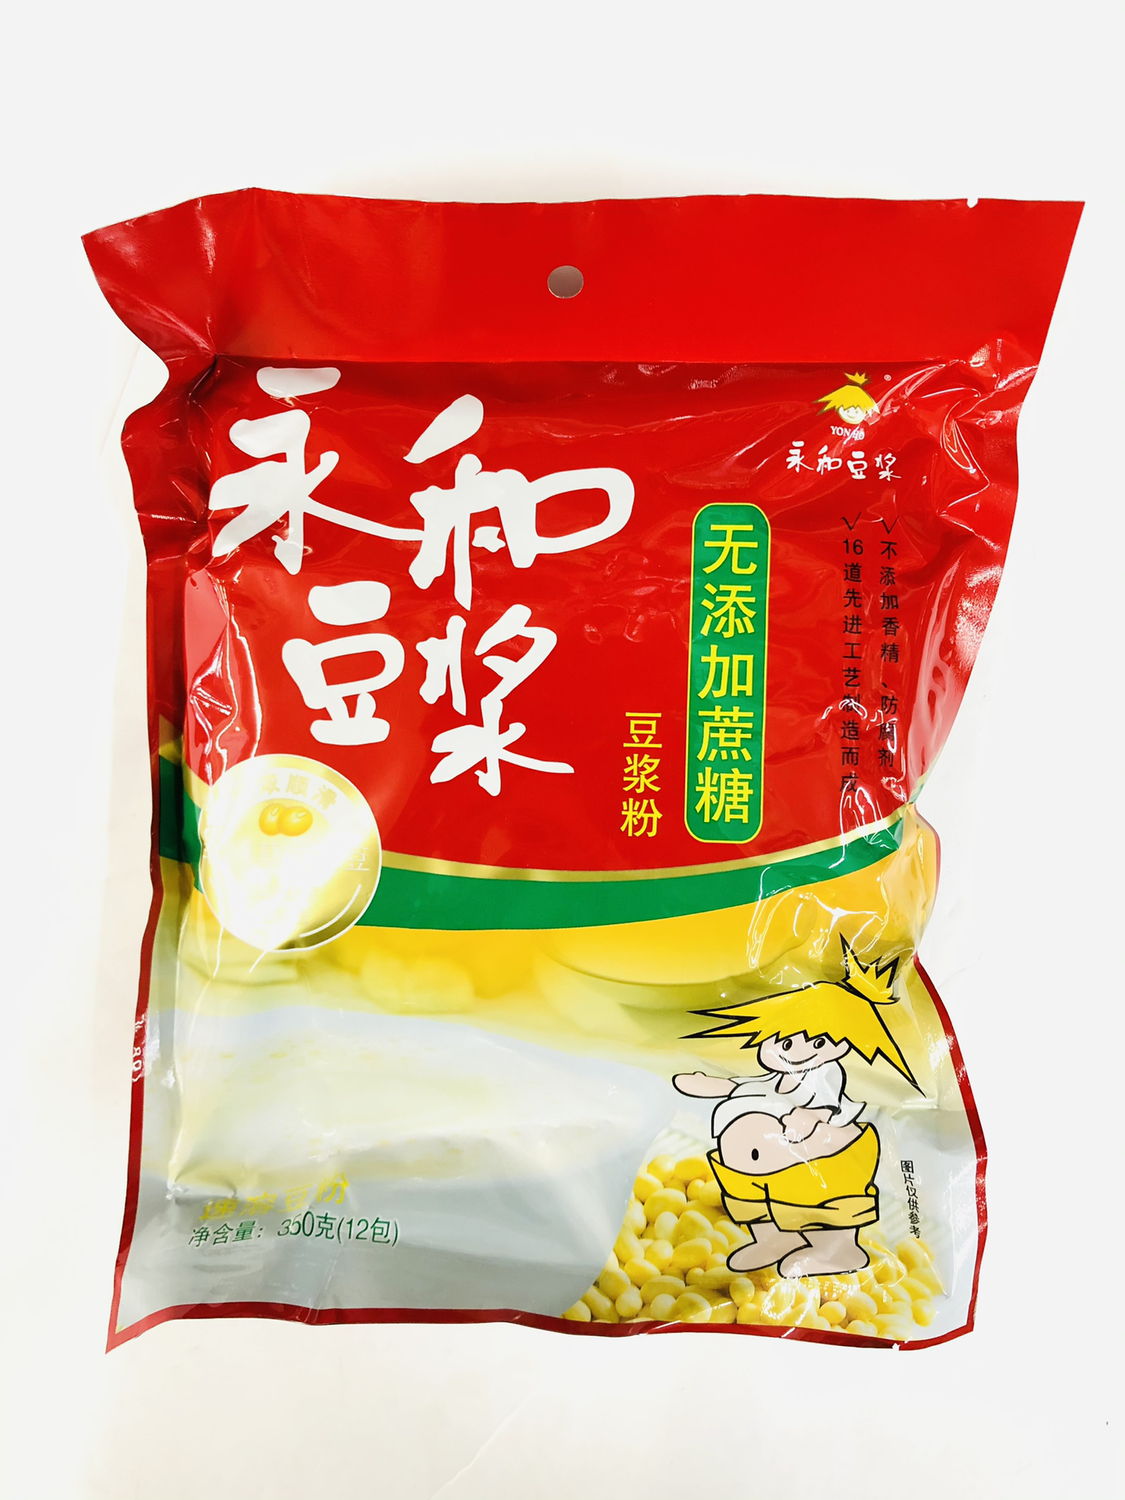 GROC【杂货】永和豆浆 无添加蔗糖豆浆粉 350g(12pk)